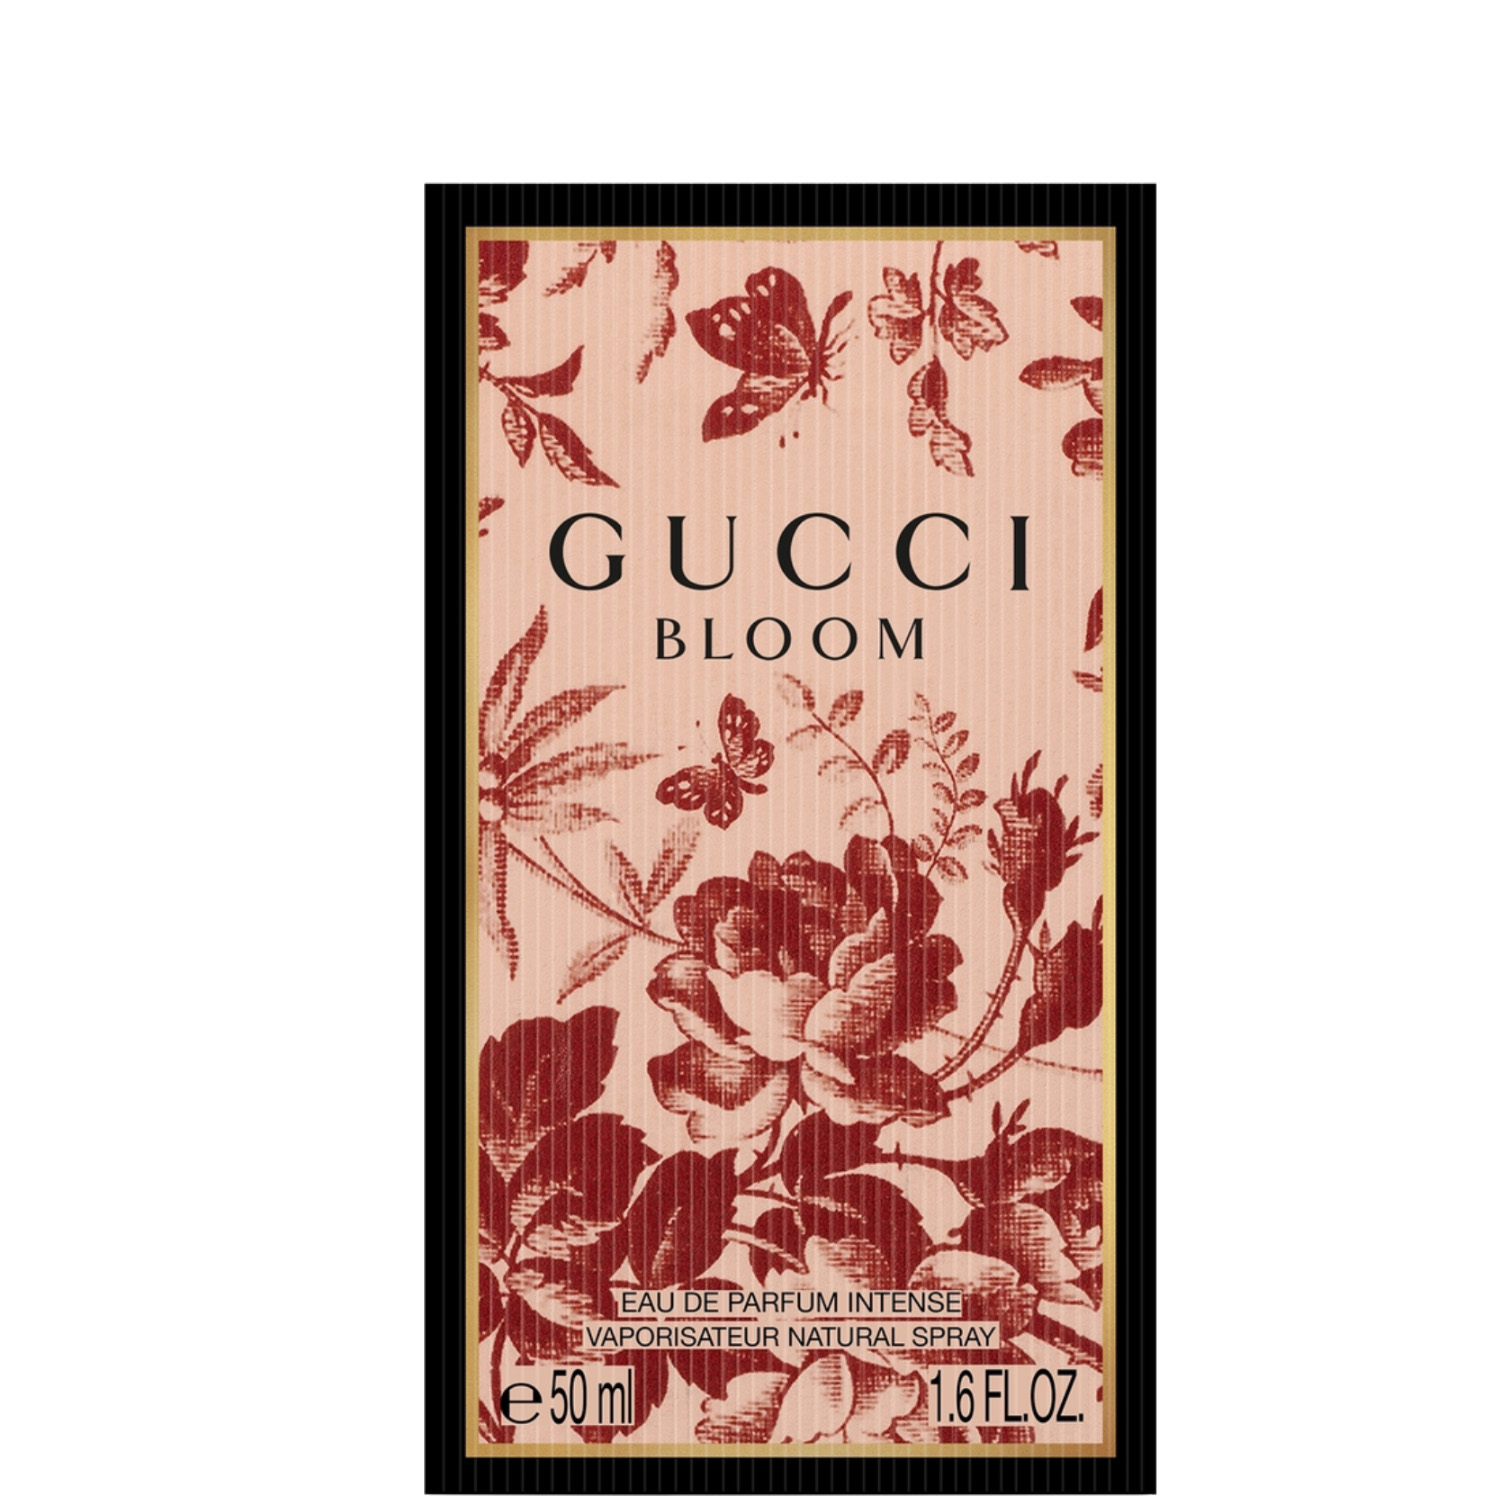 Gucci Bloom Intense Eau de Parfum 50ml